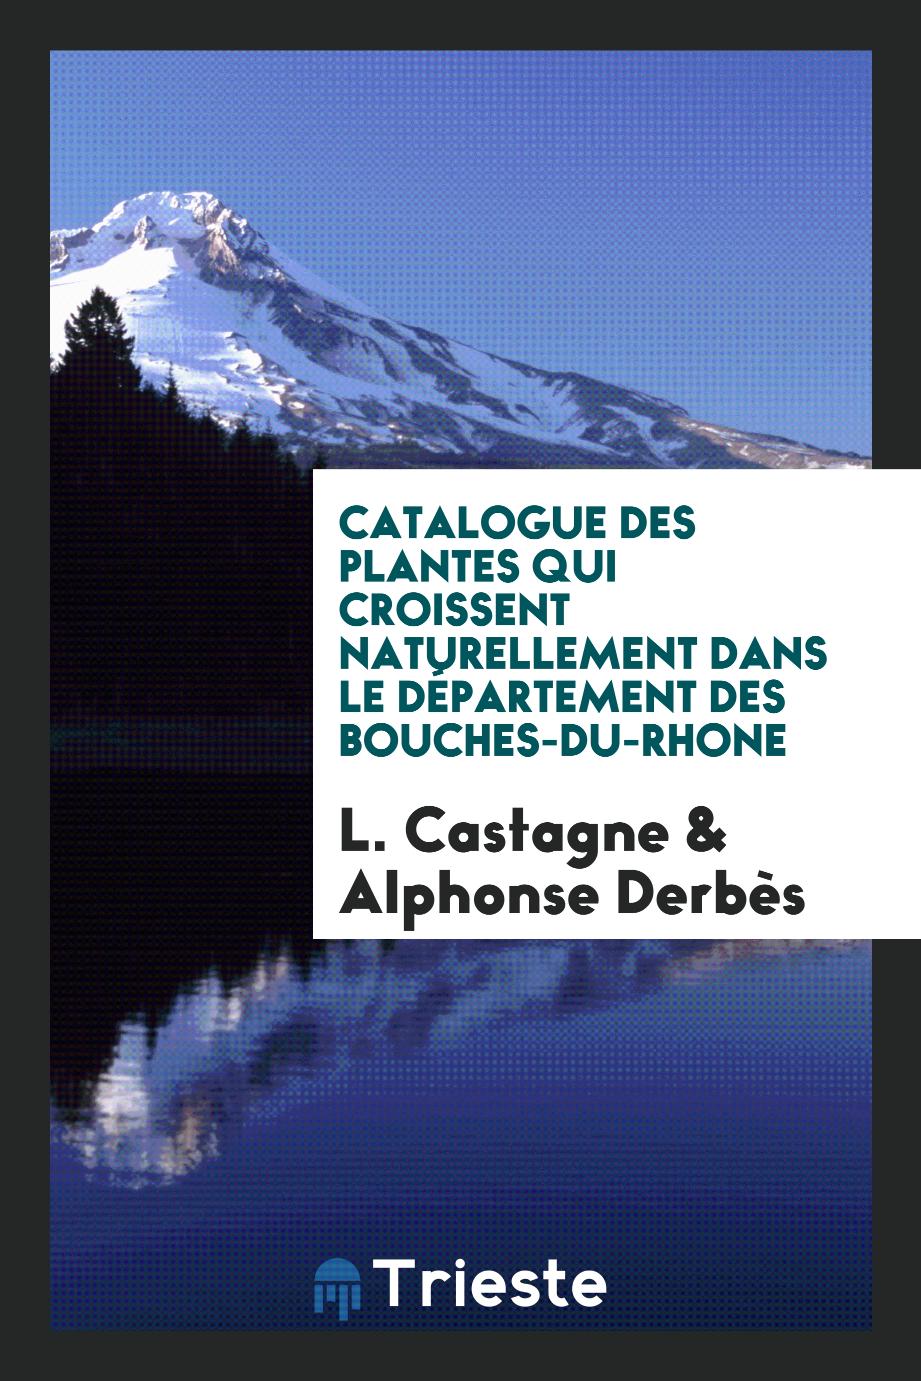 Catalogue des plantes qui croissent naturellement dans le département des Bouches-du-Rhone